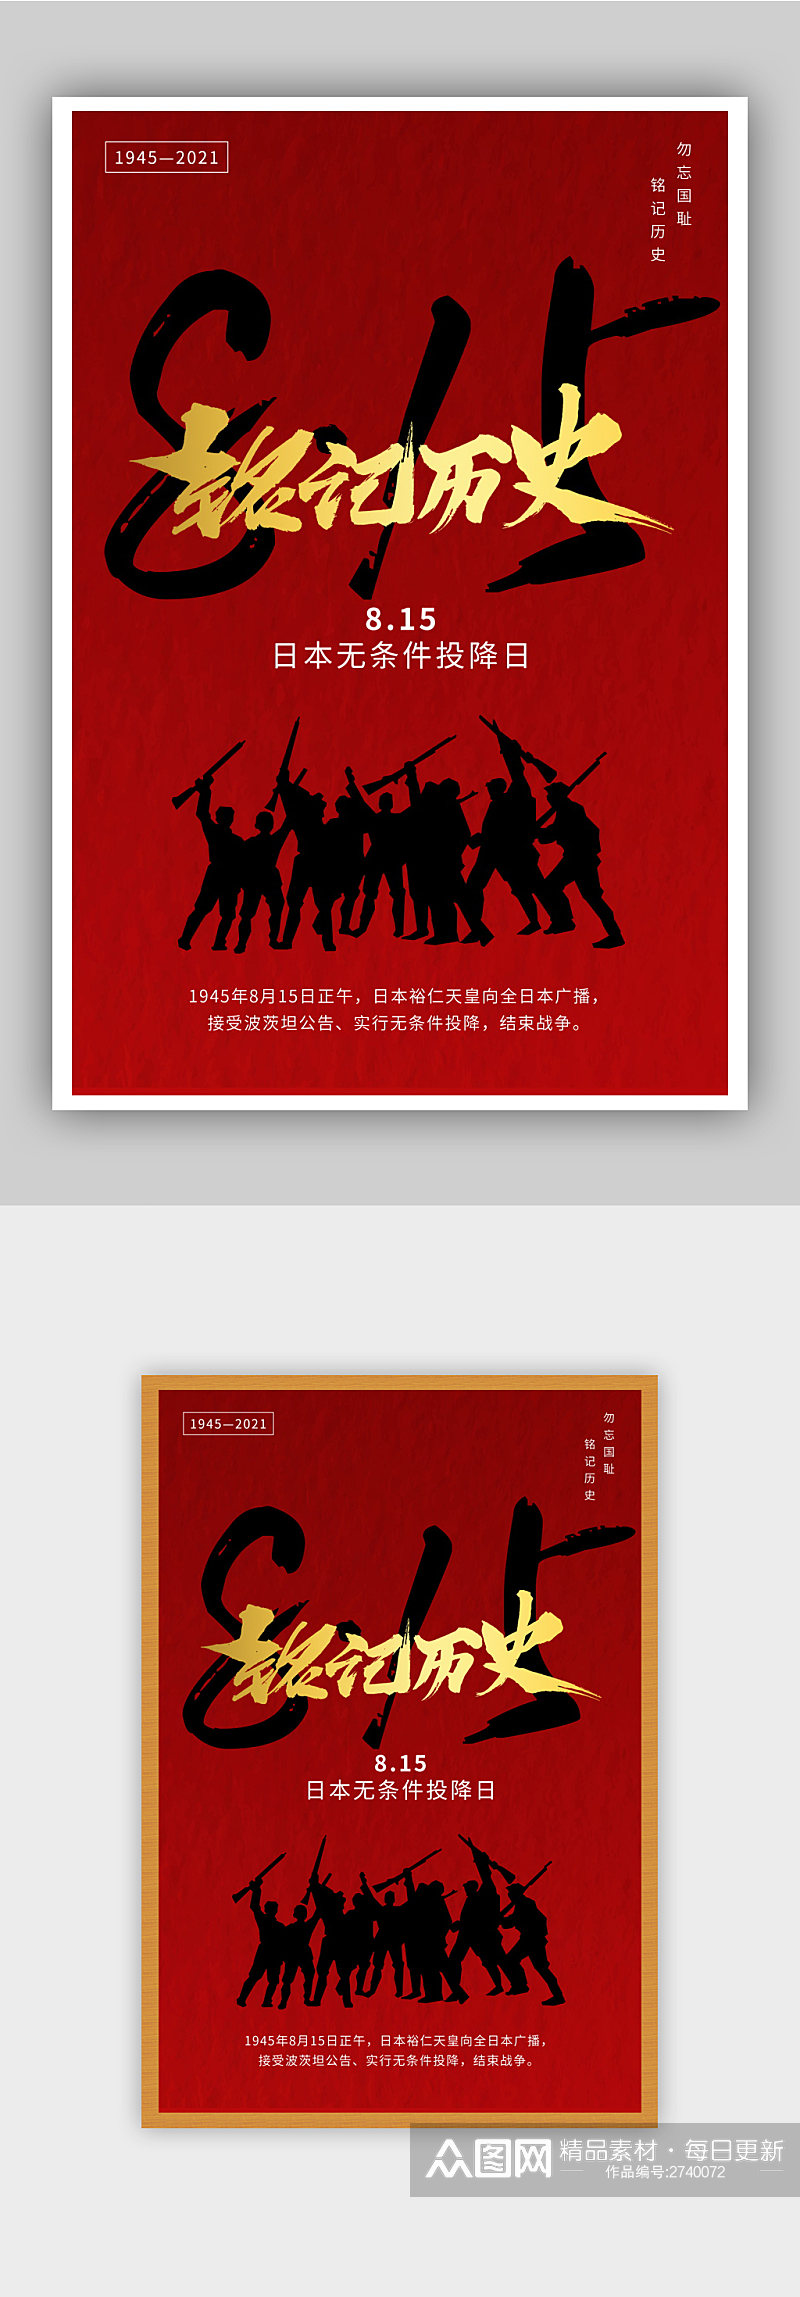 日本无条件投降纪念日海报设计素材